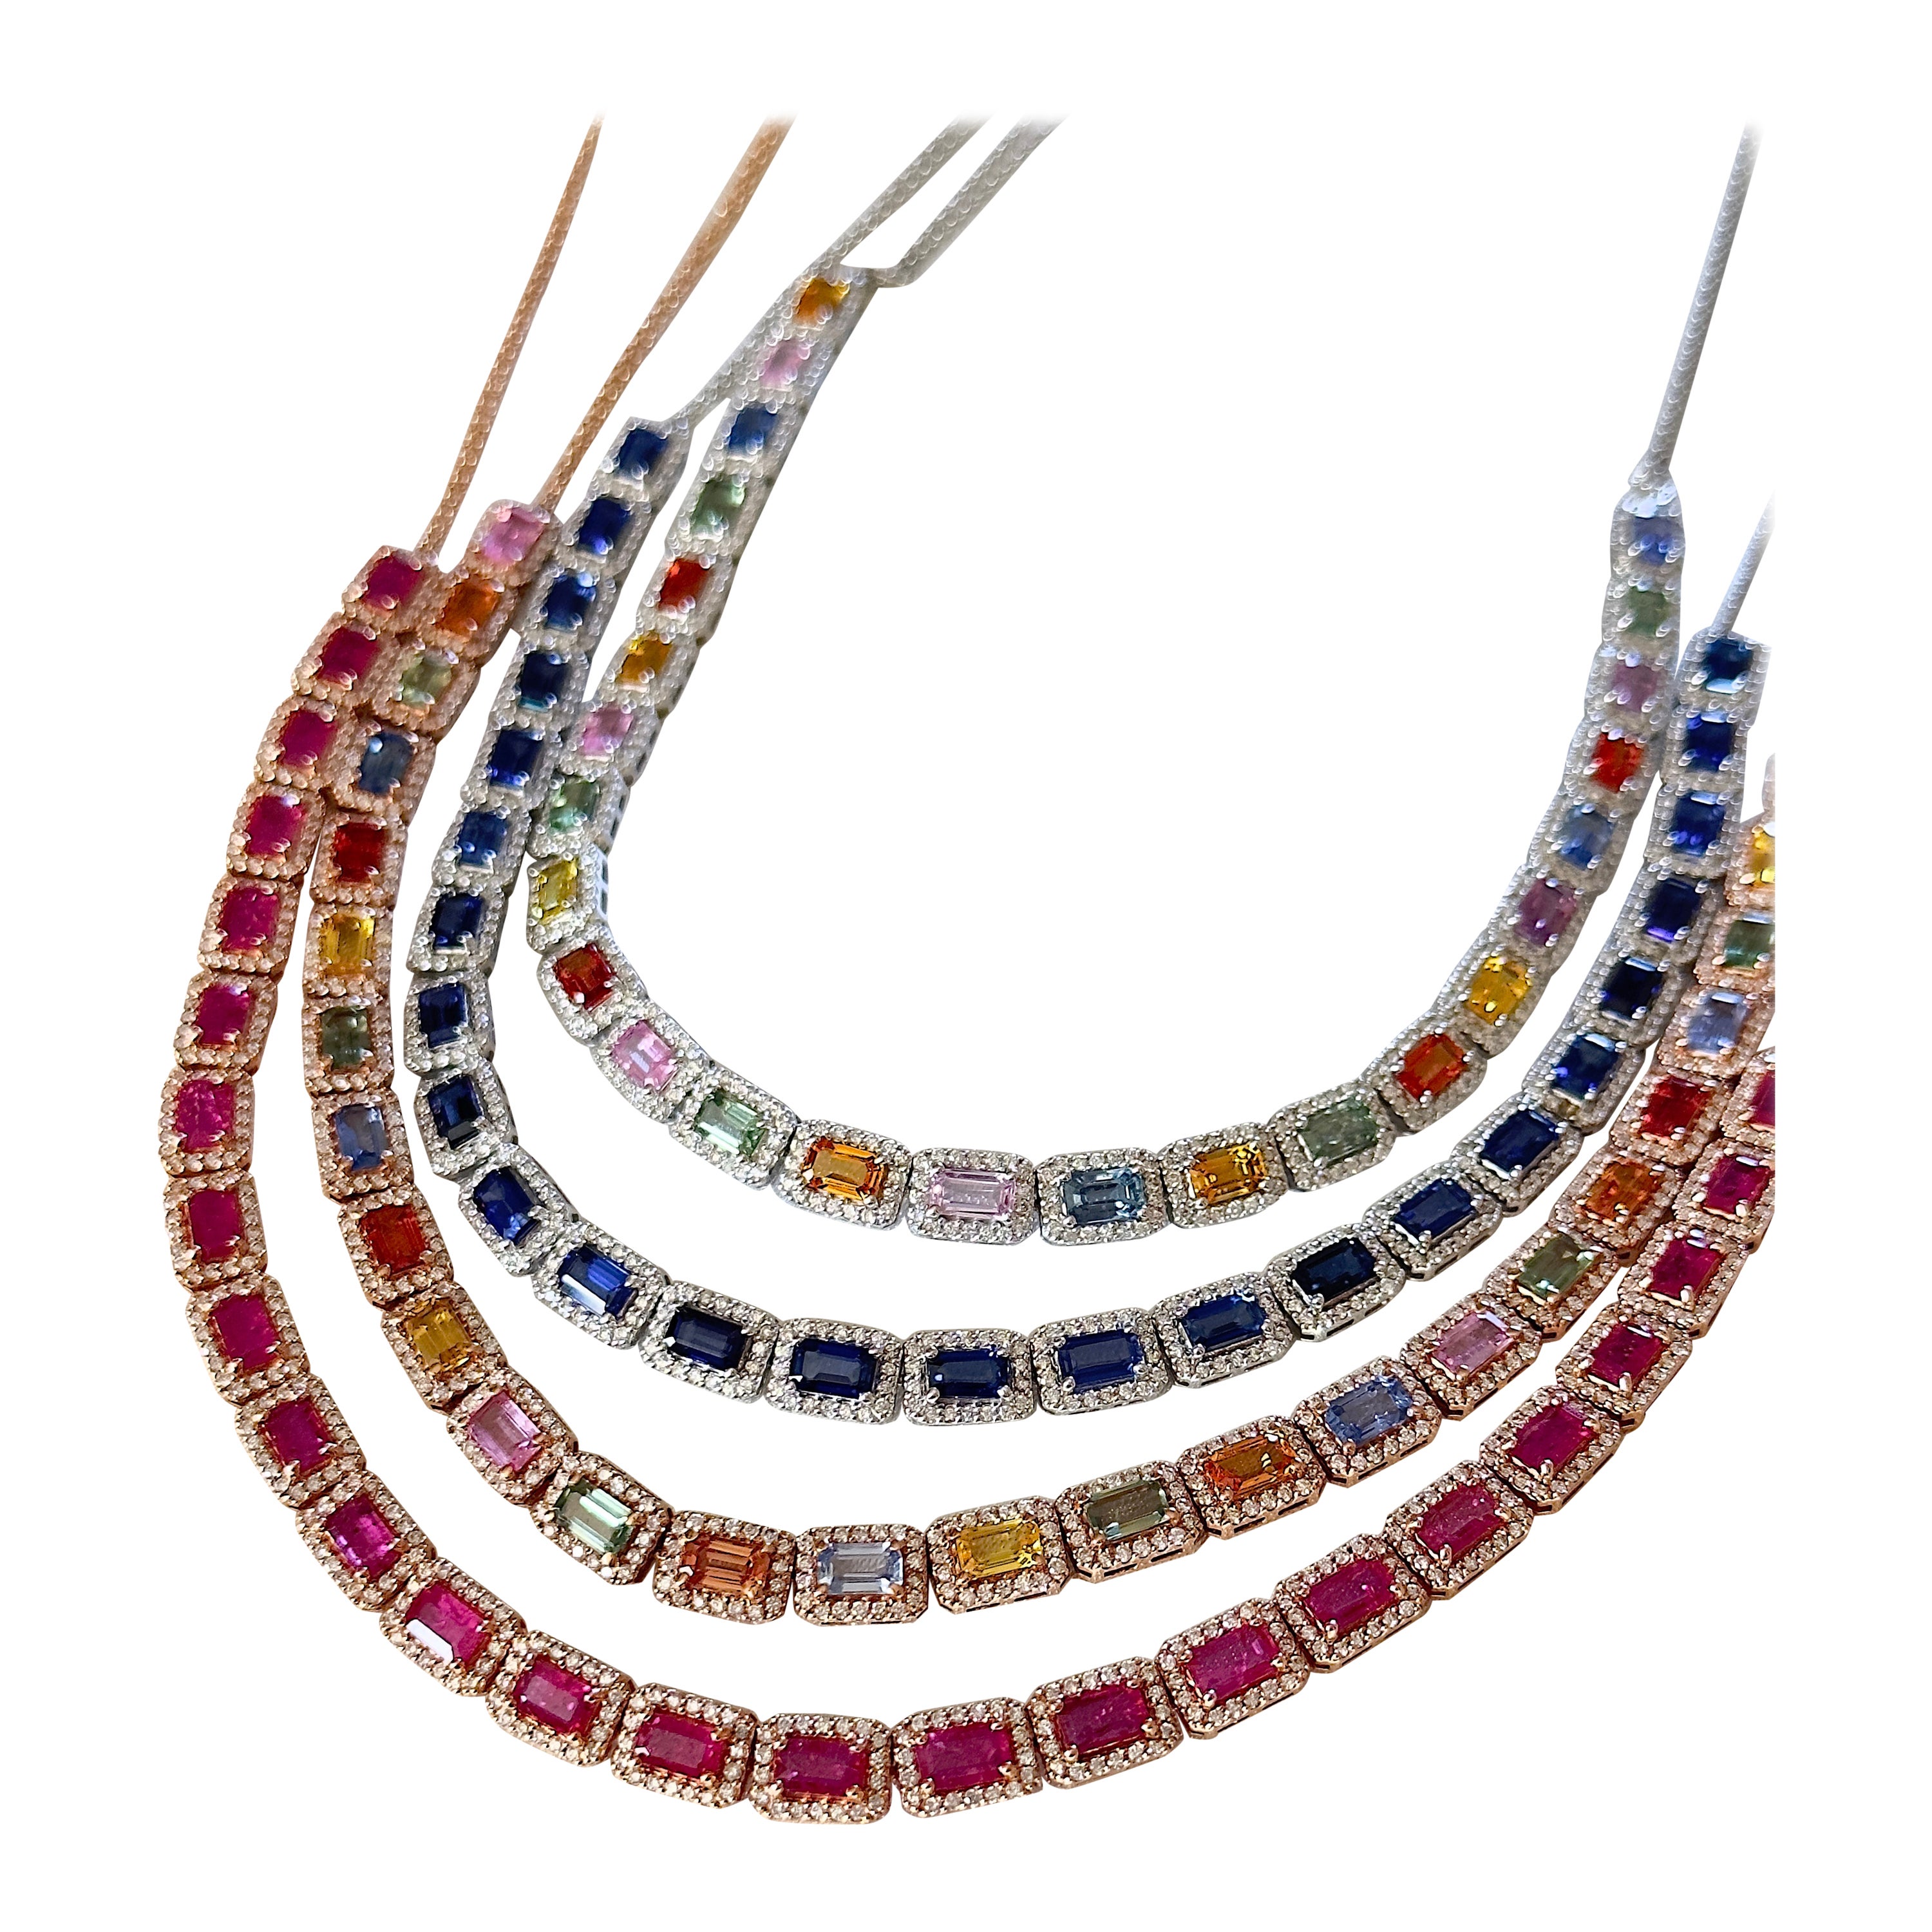 Unsere neuen Edelstein-Halsbänder sind da! Wir haben Optionen in Rainbow Sapphire, Blue Sapphire und Ruby! Die Regenbogensaphire, die sowohl in Weißgold als auch in Roségold gefasst sind, sind umwerfend schön und warten darauf, getragen zu werden!